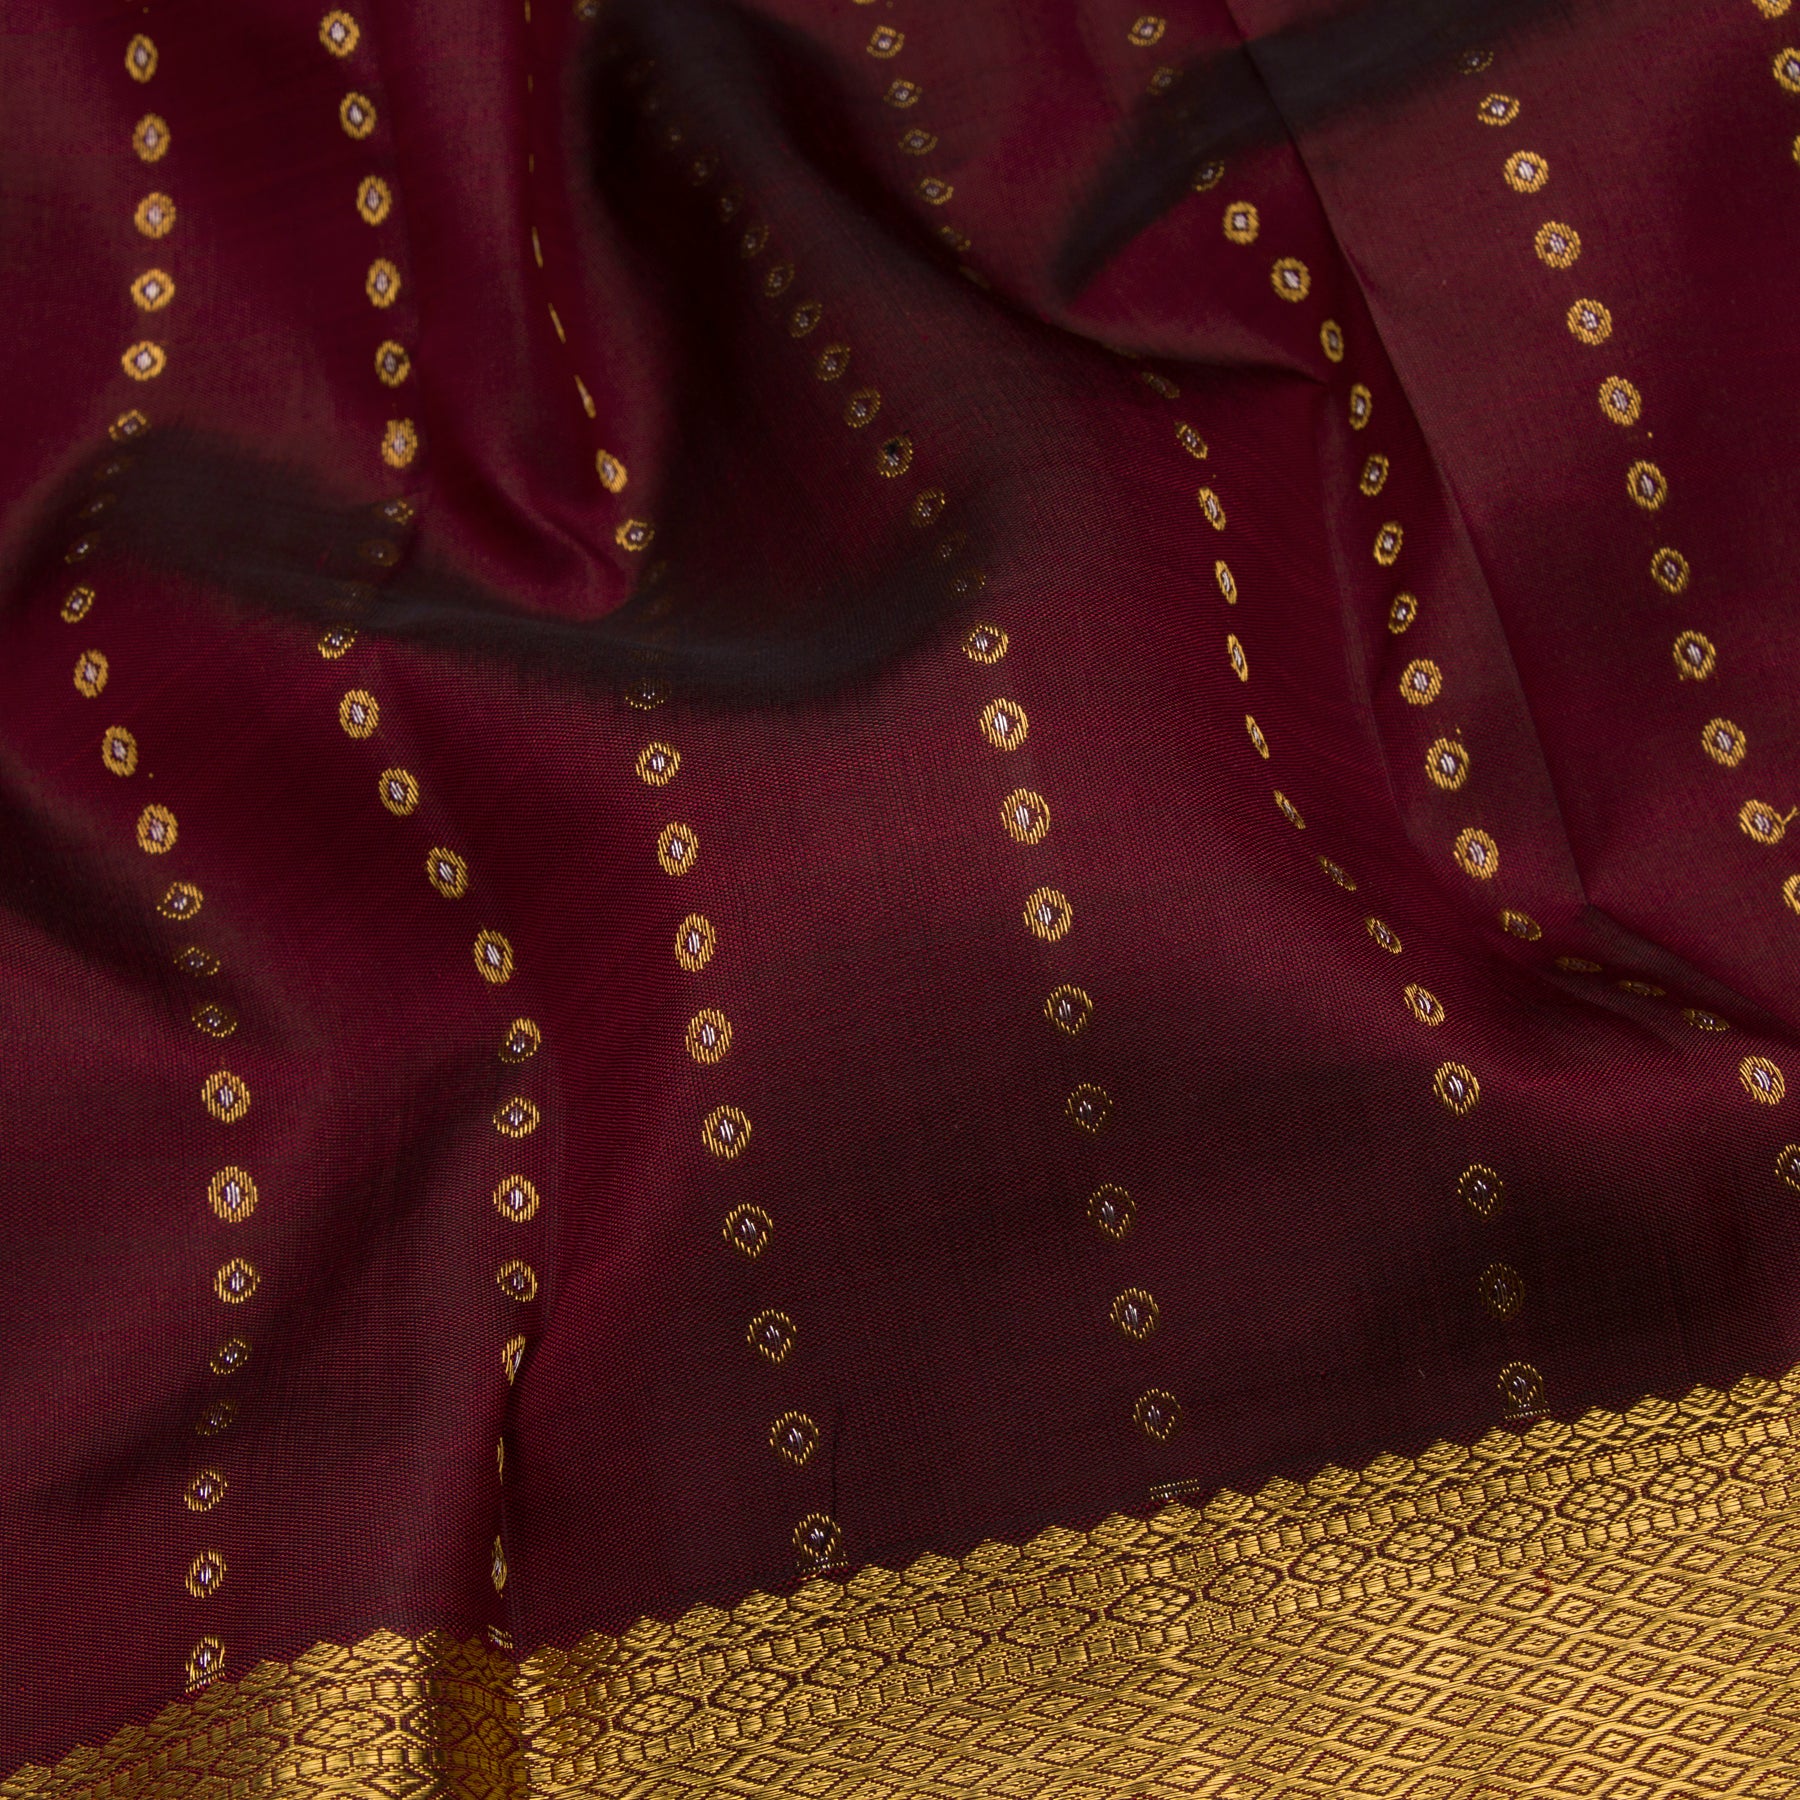 Kanakavalli Kanjivaram Silk Sari 23-611-HS001-11732 - Fabric View